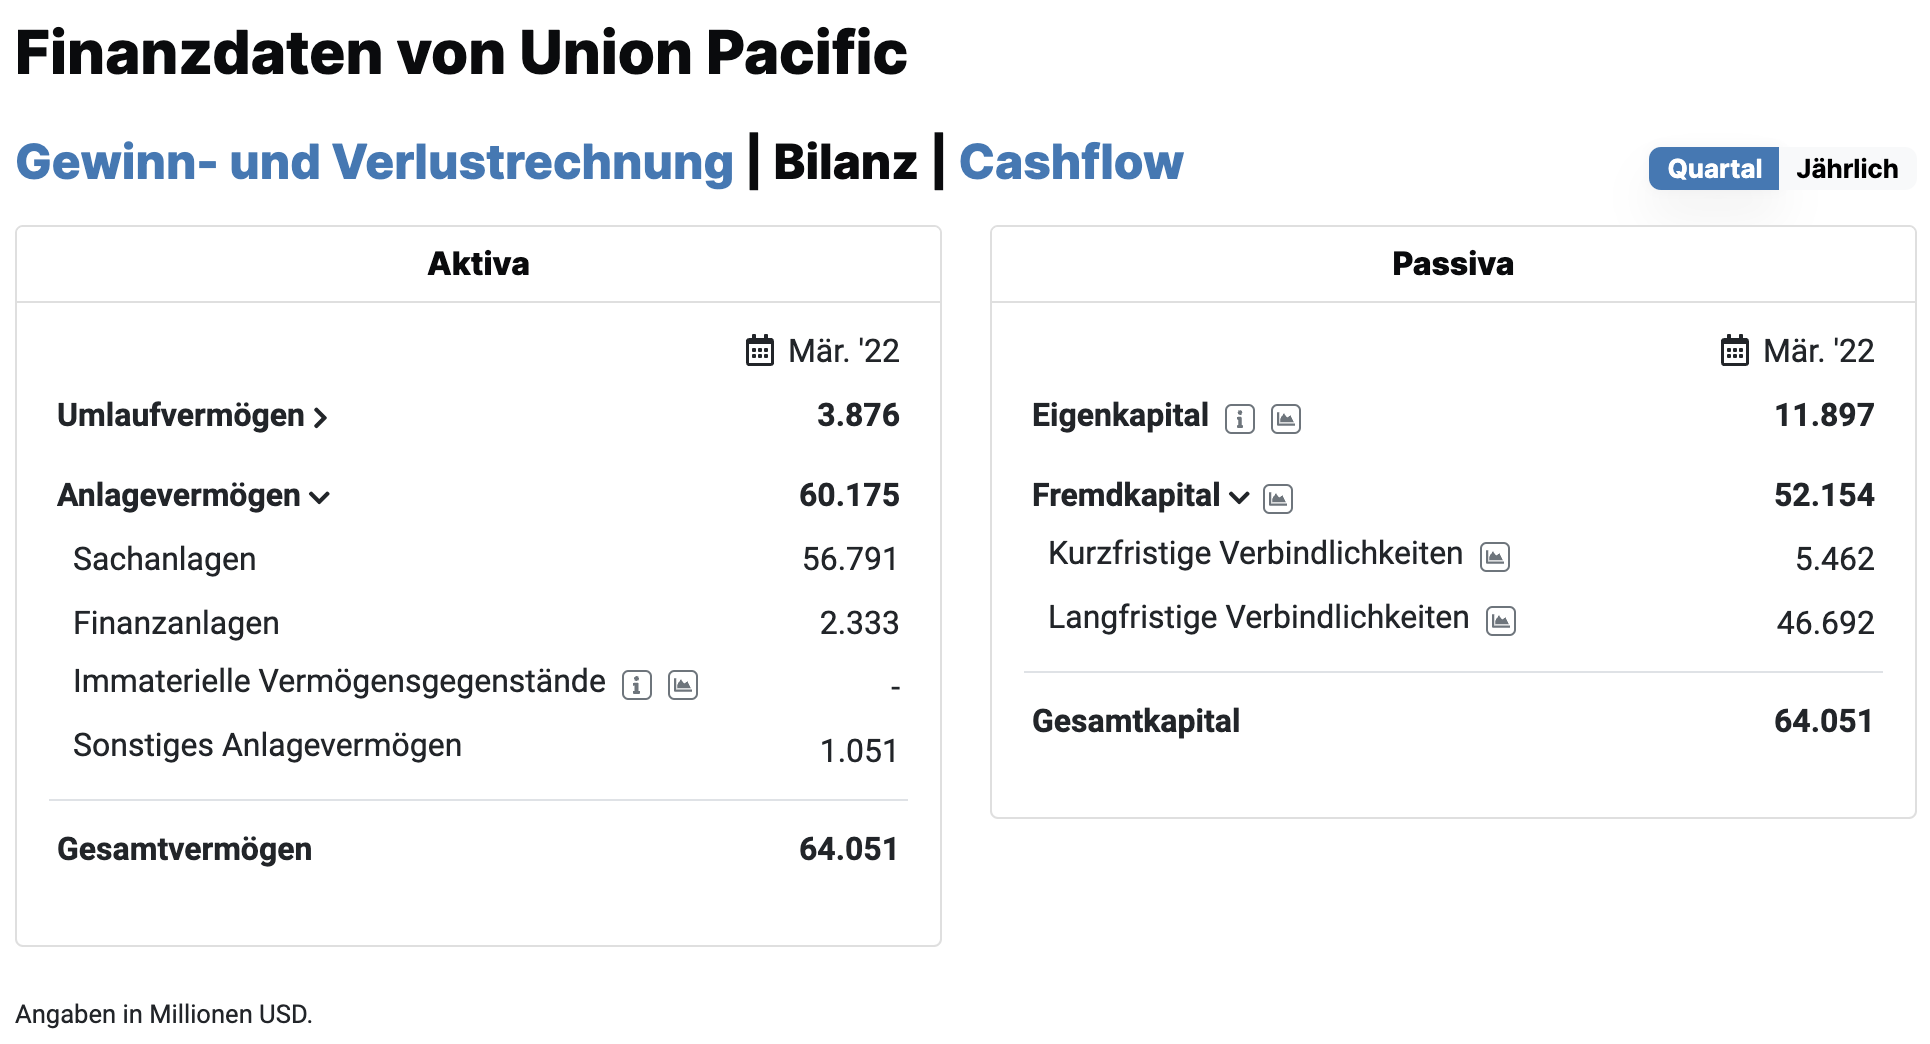 Bilanz von Union Pacific